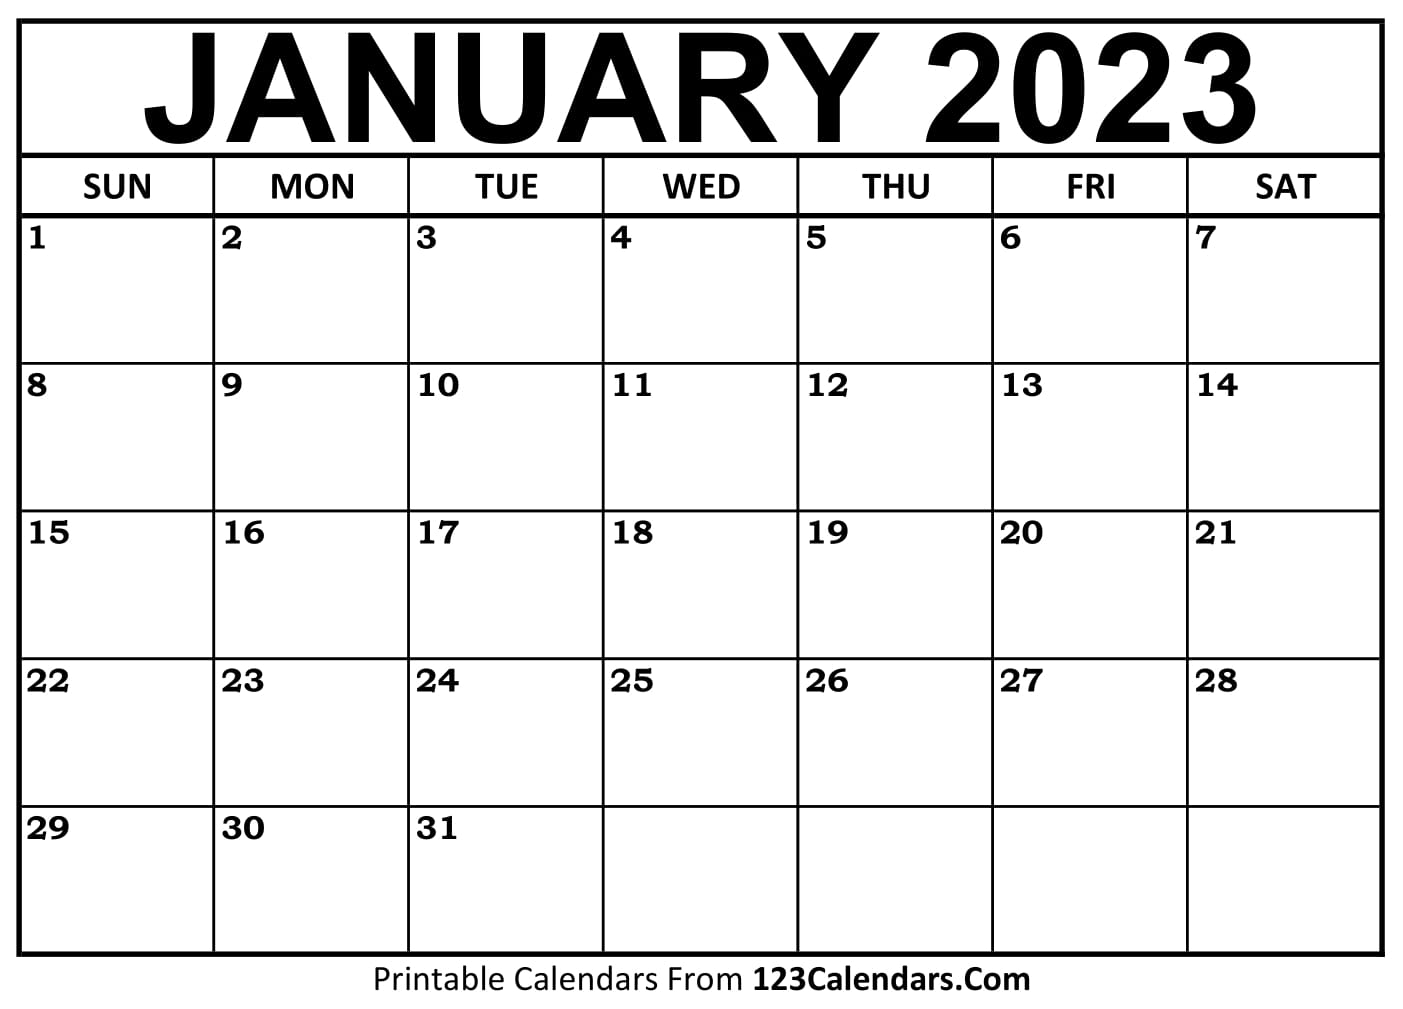 Printable January 2021 Calendar Templates | 123Calendars.com